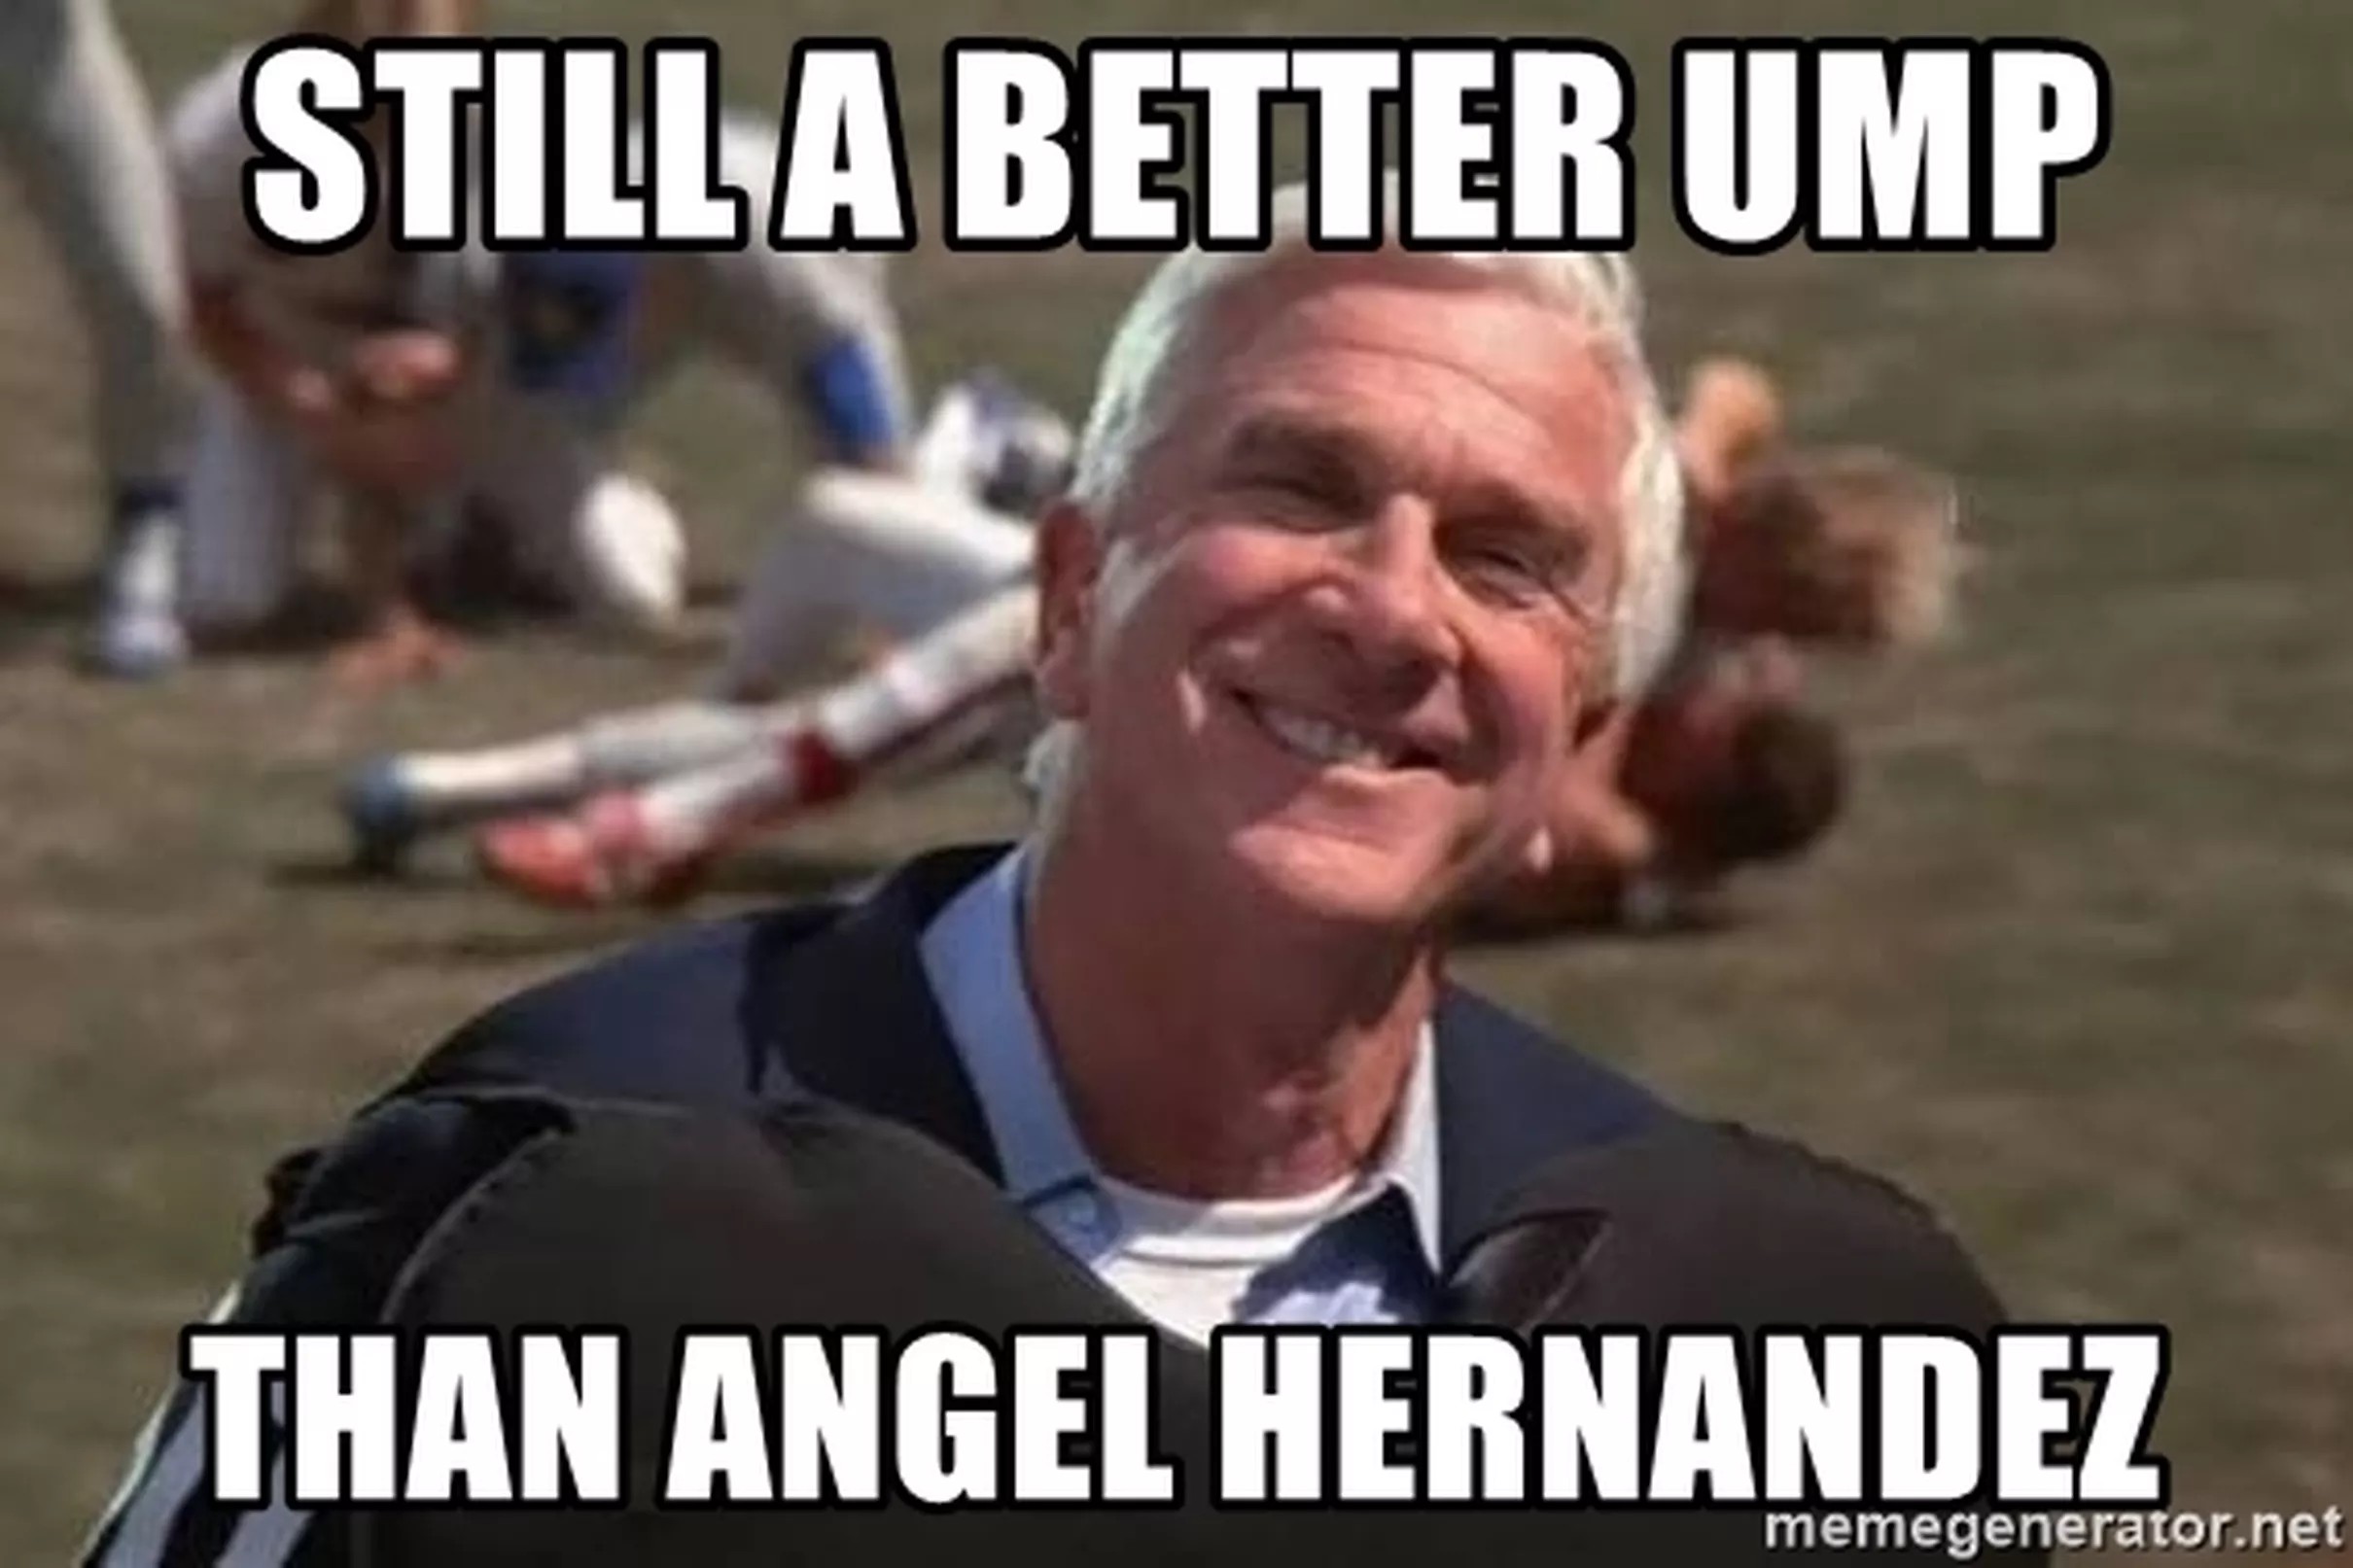 Angel Hernandez, The worst umpire in Baseball.